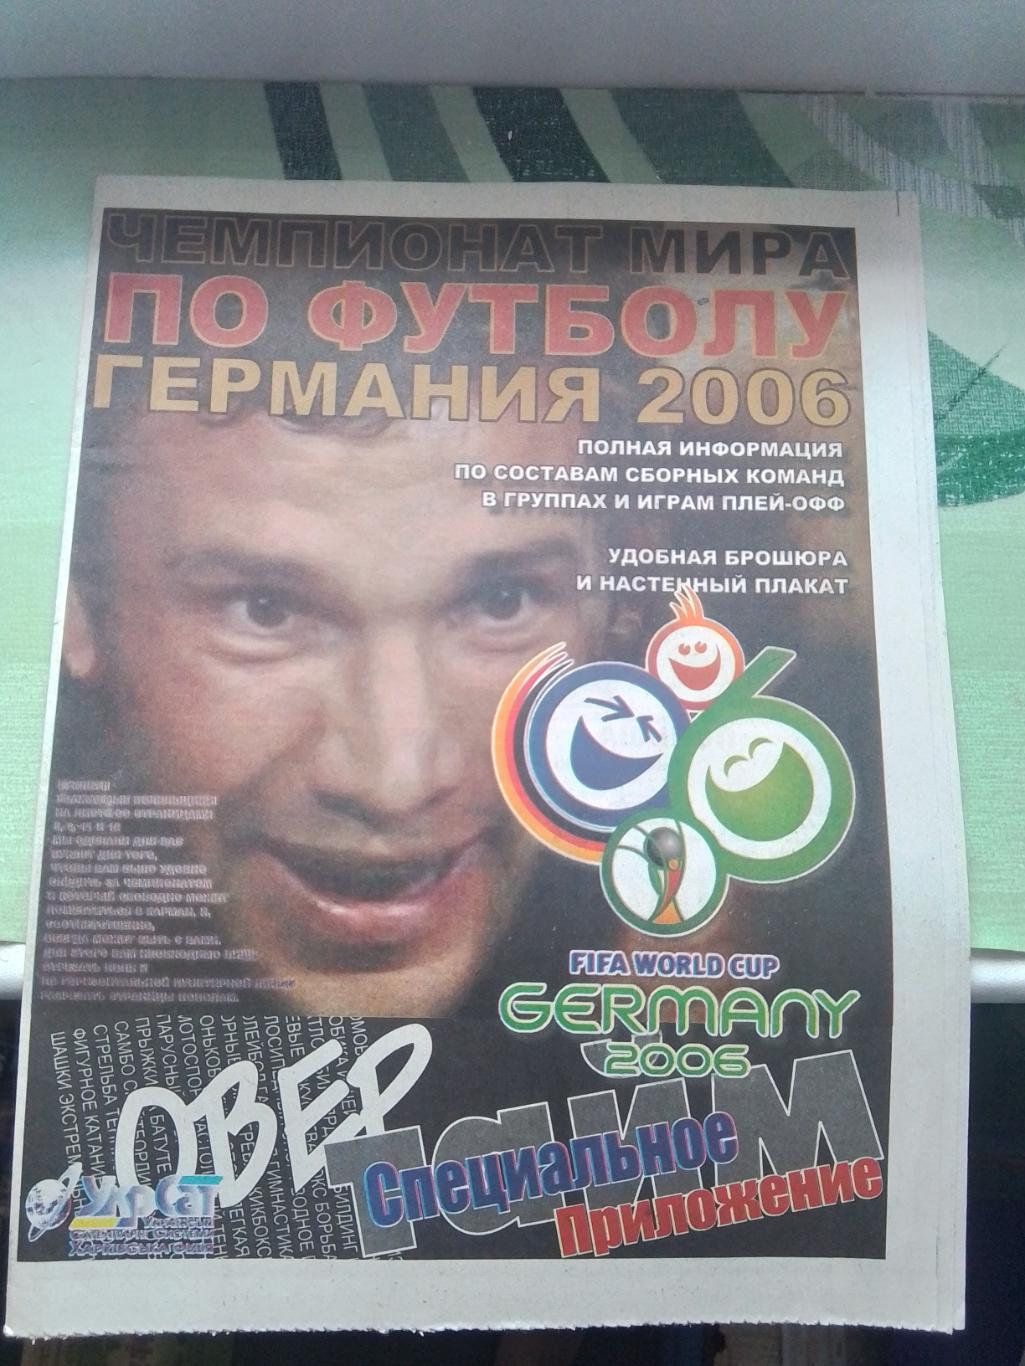 Спецприложение к ЧМ Превью 2006 Овертайм Харьков 2006